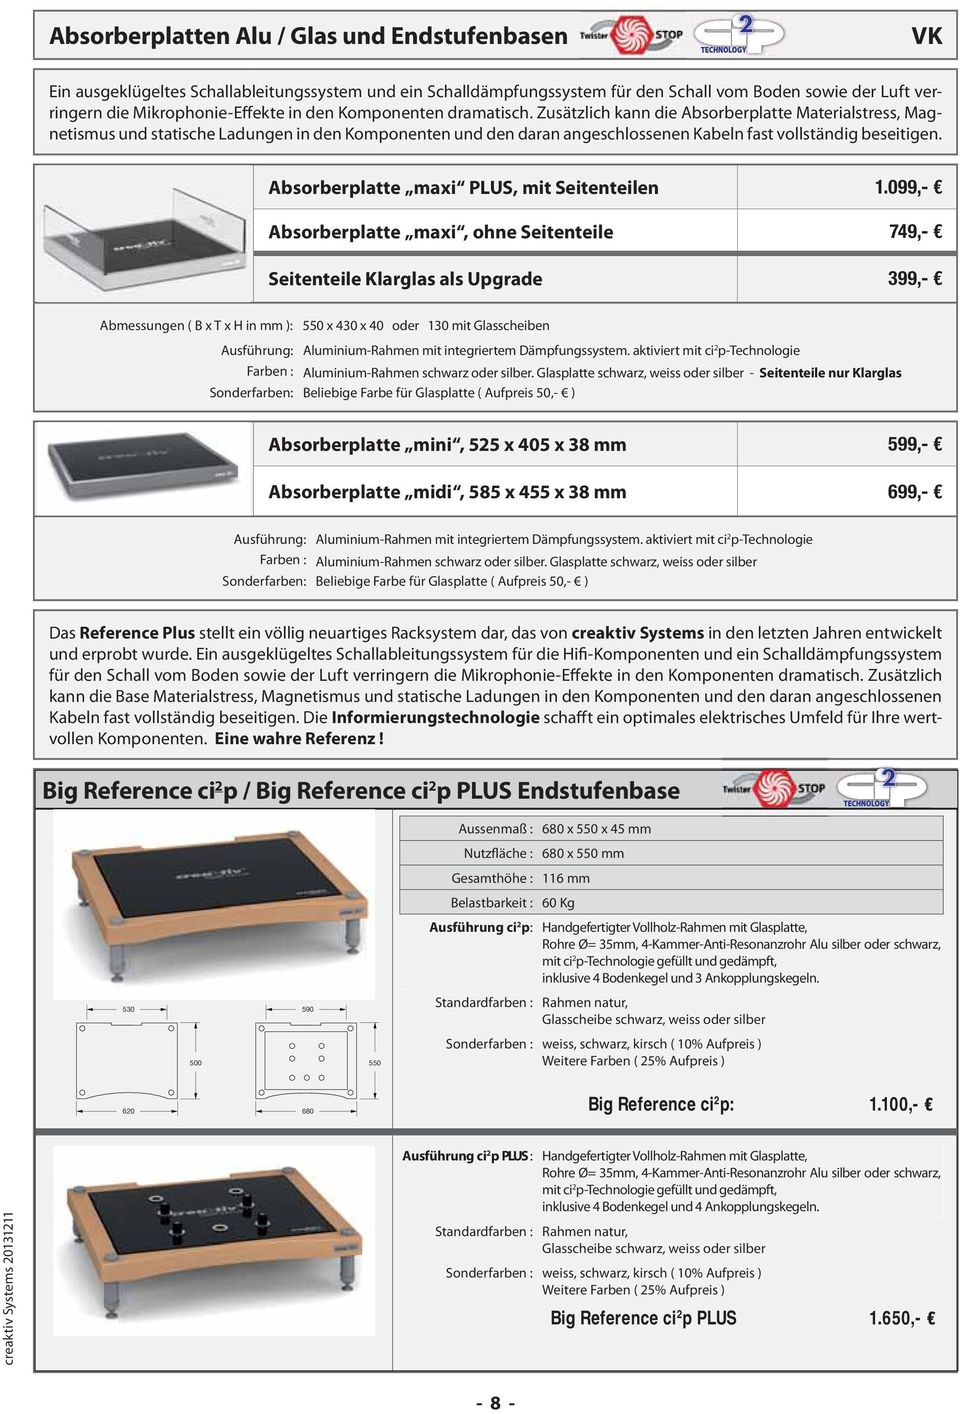 Absorberplatte maxi PLUS, mit Seitenteilen 1.